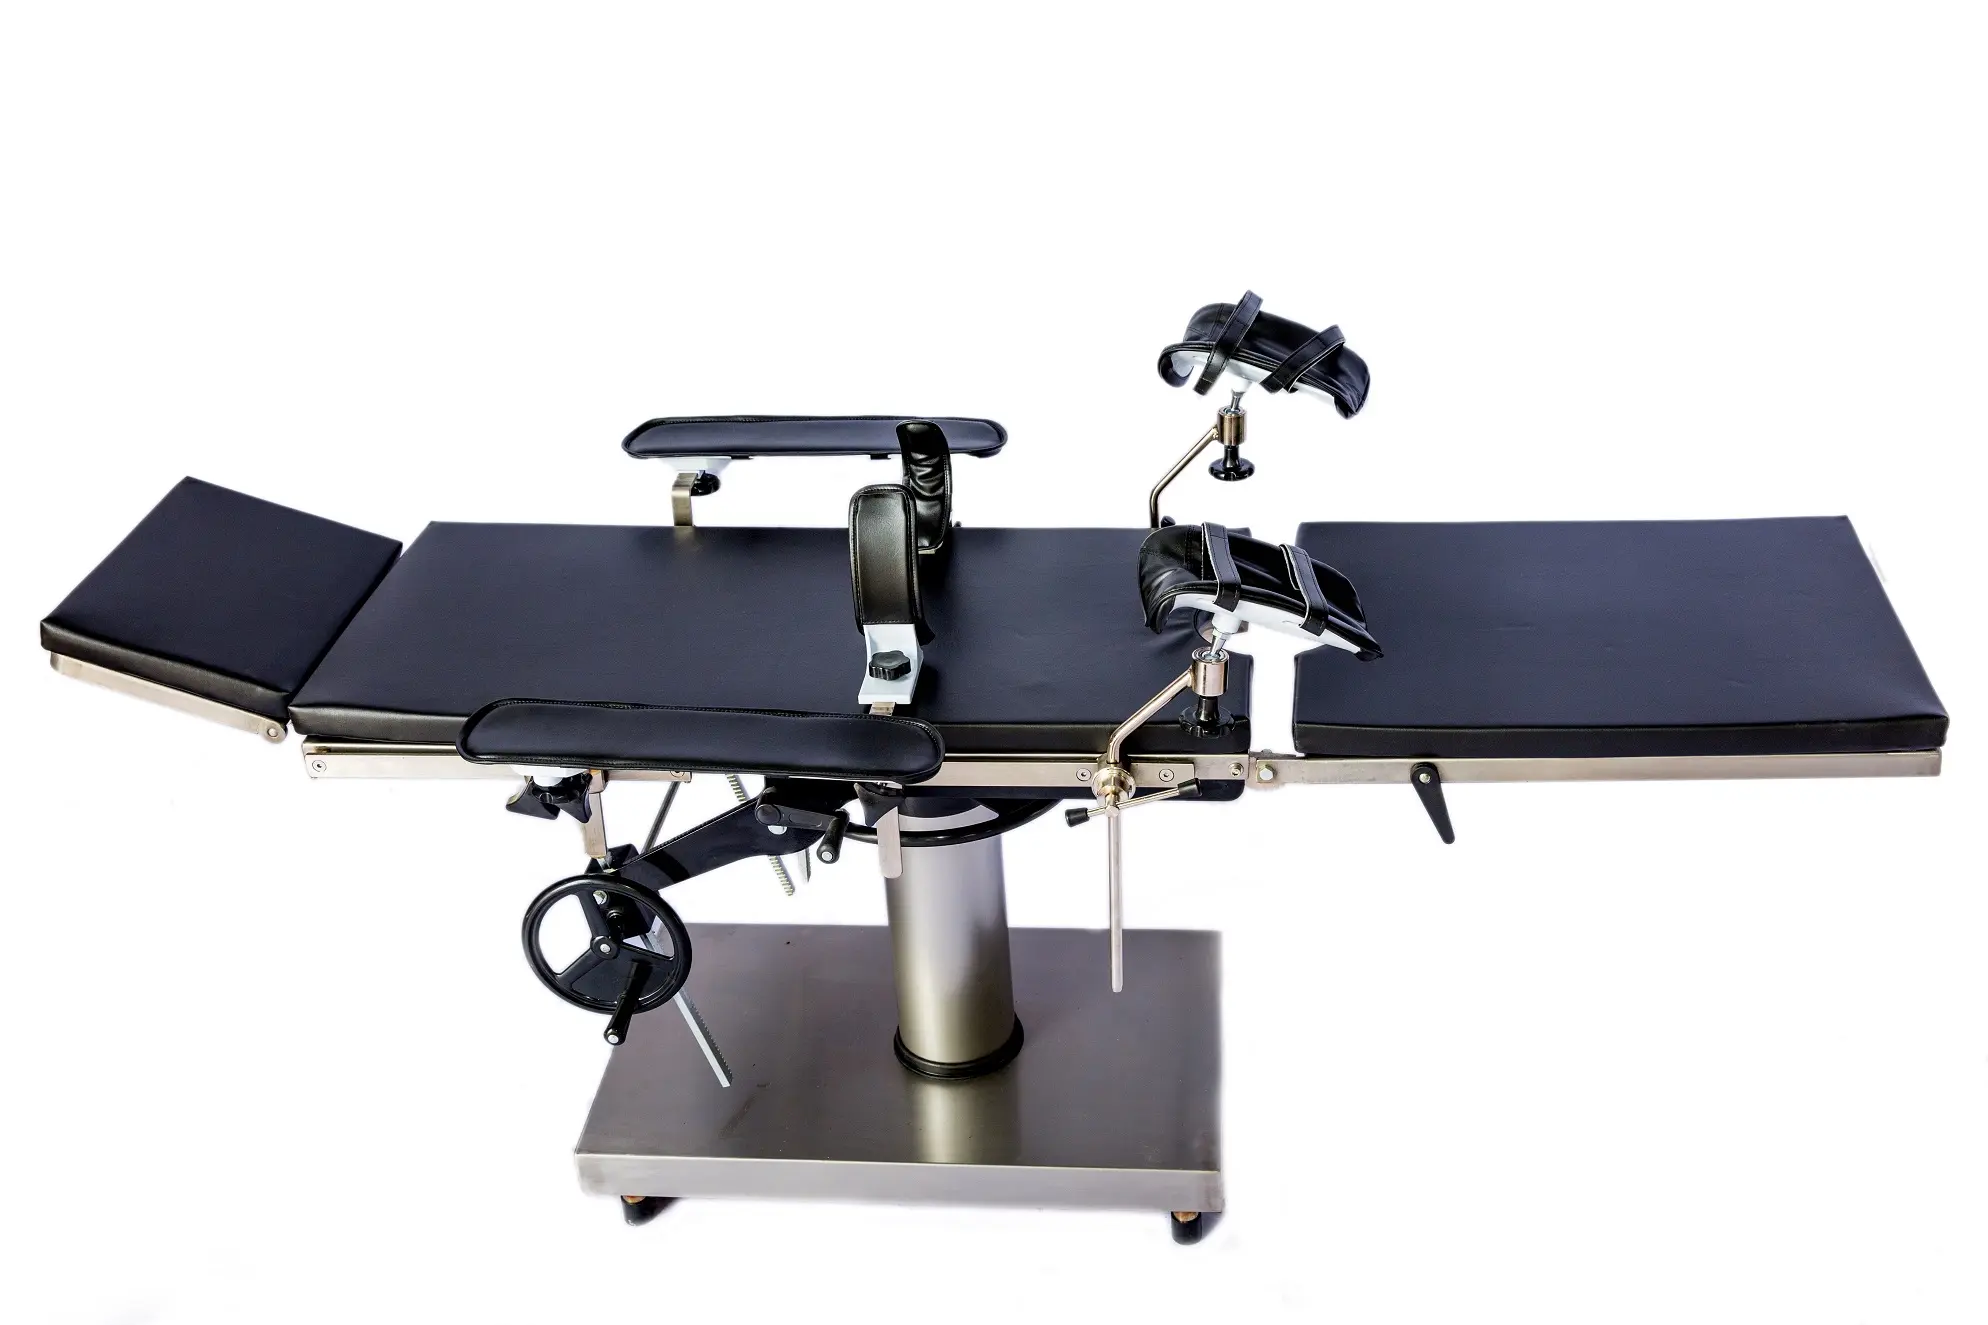 Table d'opération chirurgicale économique Table d'opération chirurgicale manuelle commune Lit de théâtre Table d'opération chirurgicale